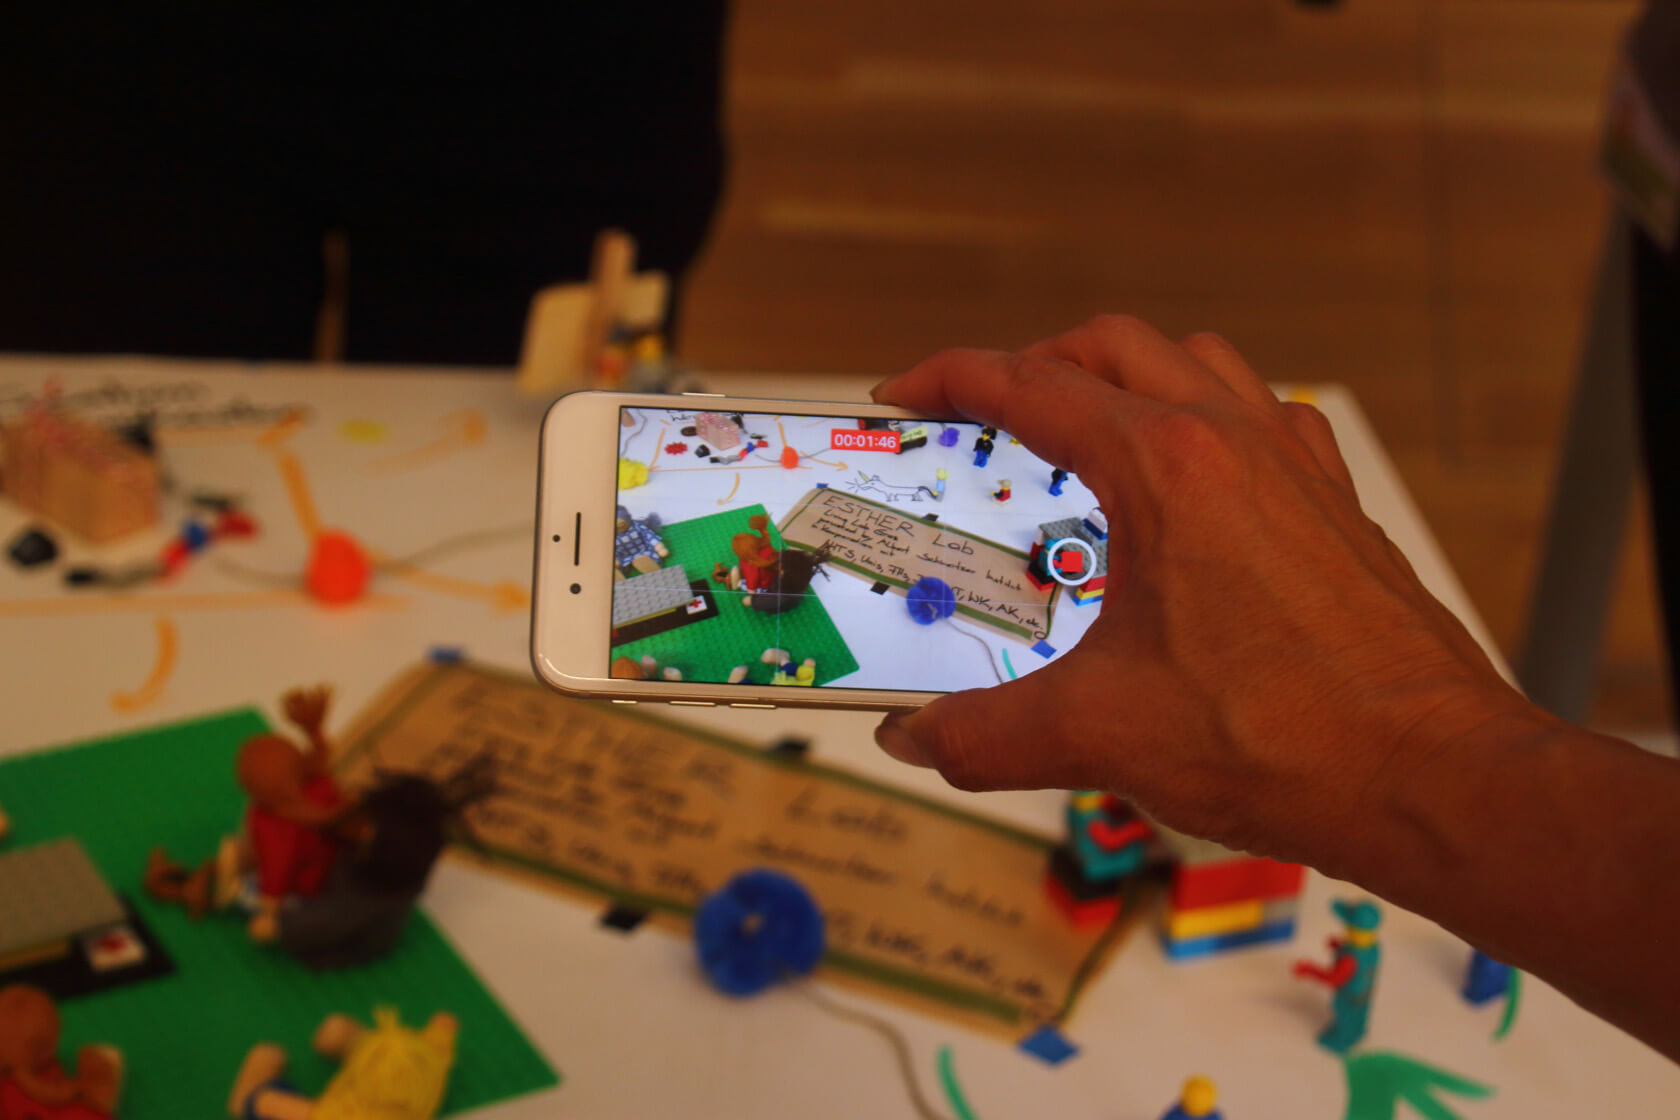 Eine Hand hält ein Smartphone mit aktivem Bildschirm im Bildaufnahmemodus. Auf dem Bildschirm des Smartphones ist das Objekt der Aufnahme zu sehen: eine Lego-Landschaft und ein Zettel, auf dem Esther Lab steht.